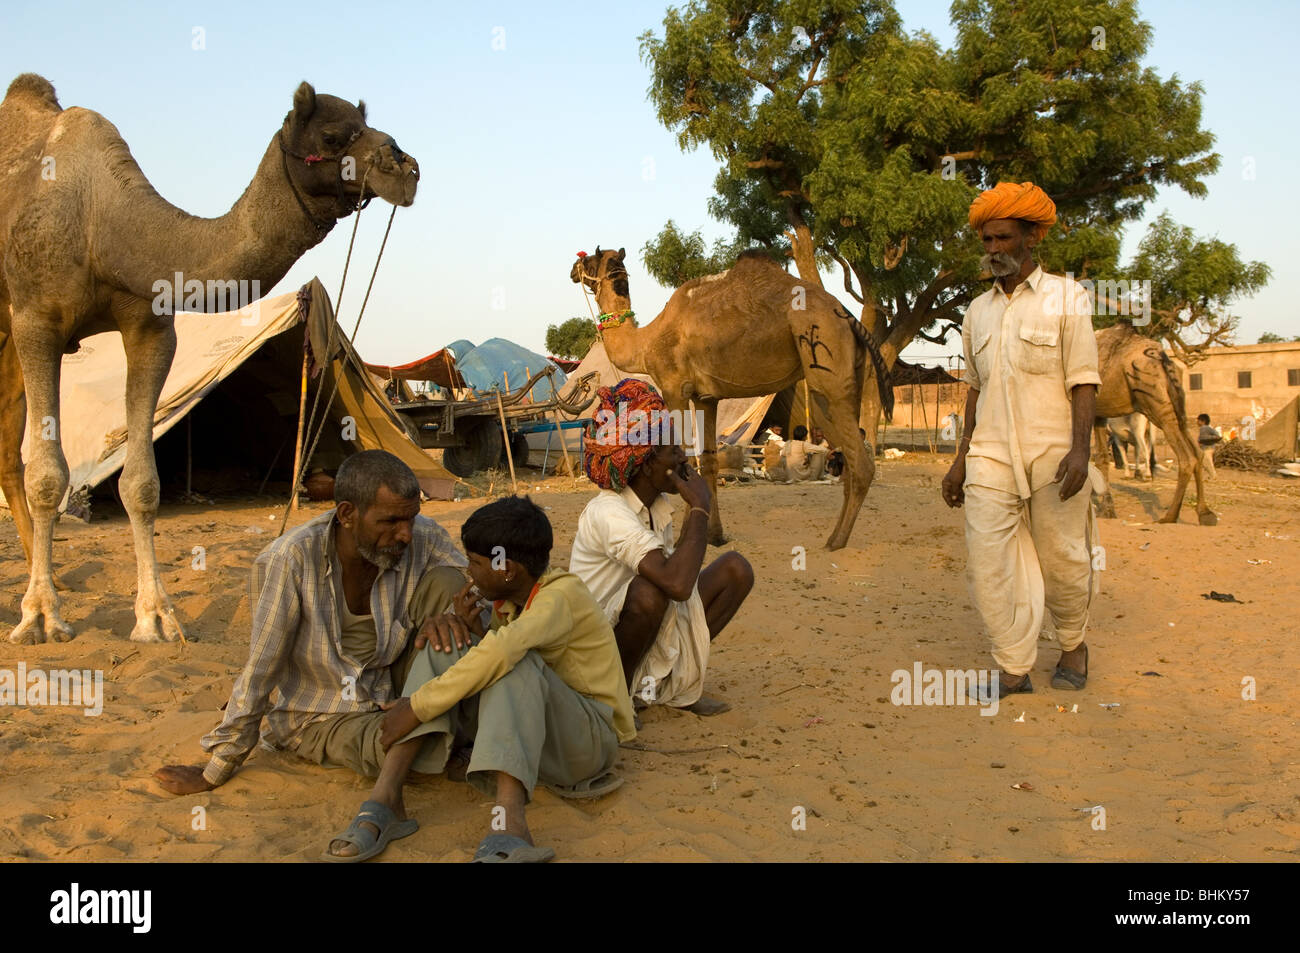 Pushkar während der Messe Pushkar, Rajasthan, Indien. Kamel Händler am Vieh Teil der Messe. Stockfoto